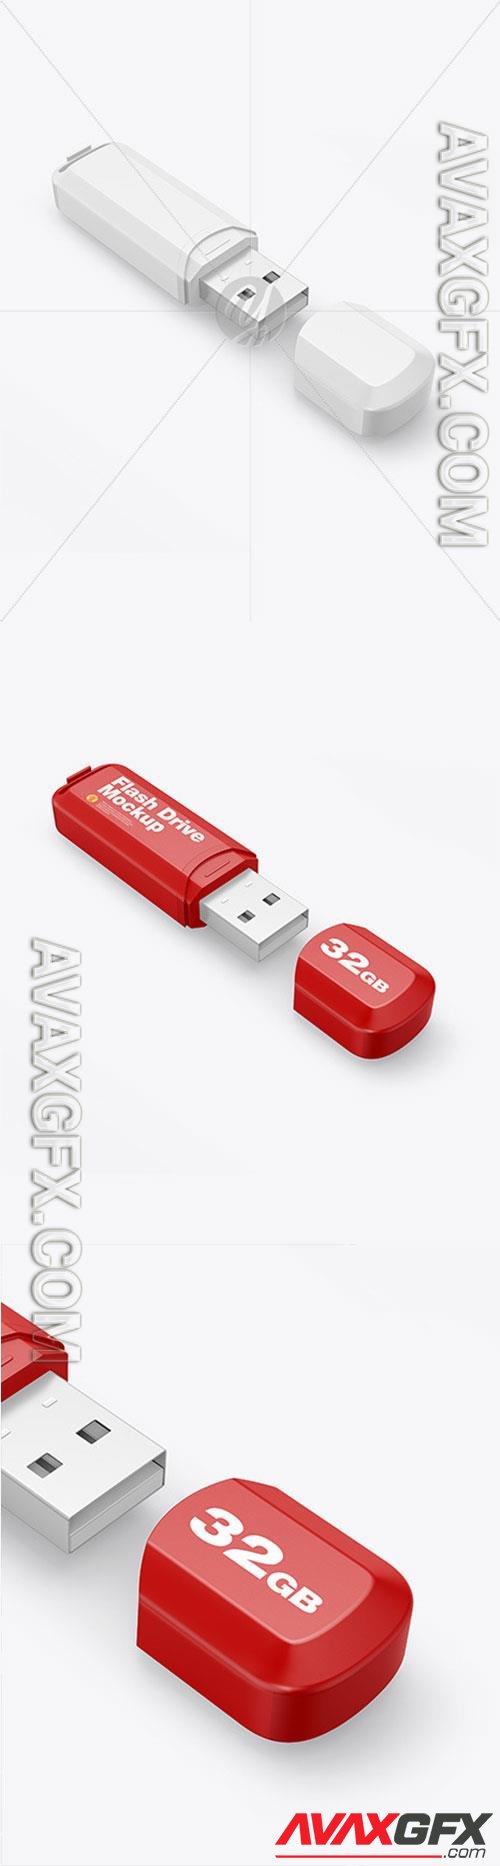 Plastic USB Flash Drive Mockup 86446 TIF